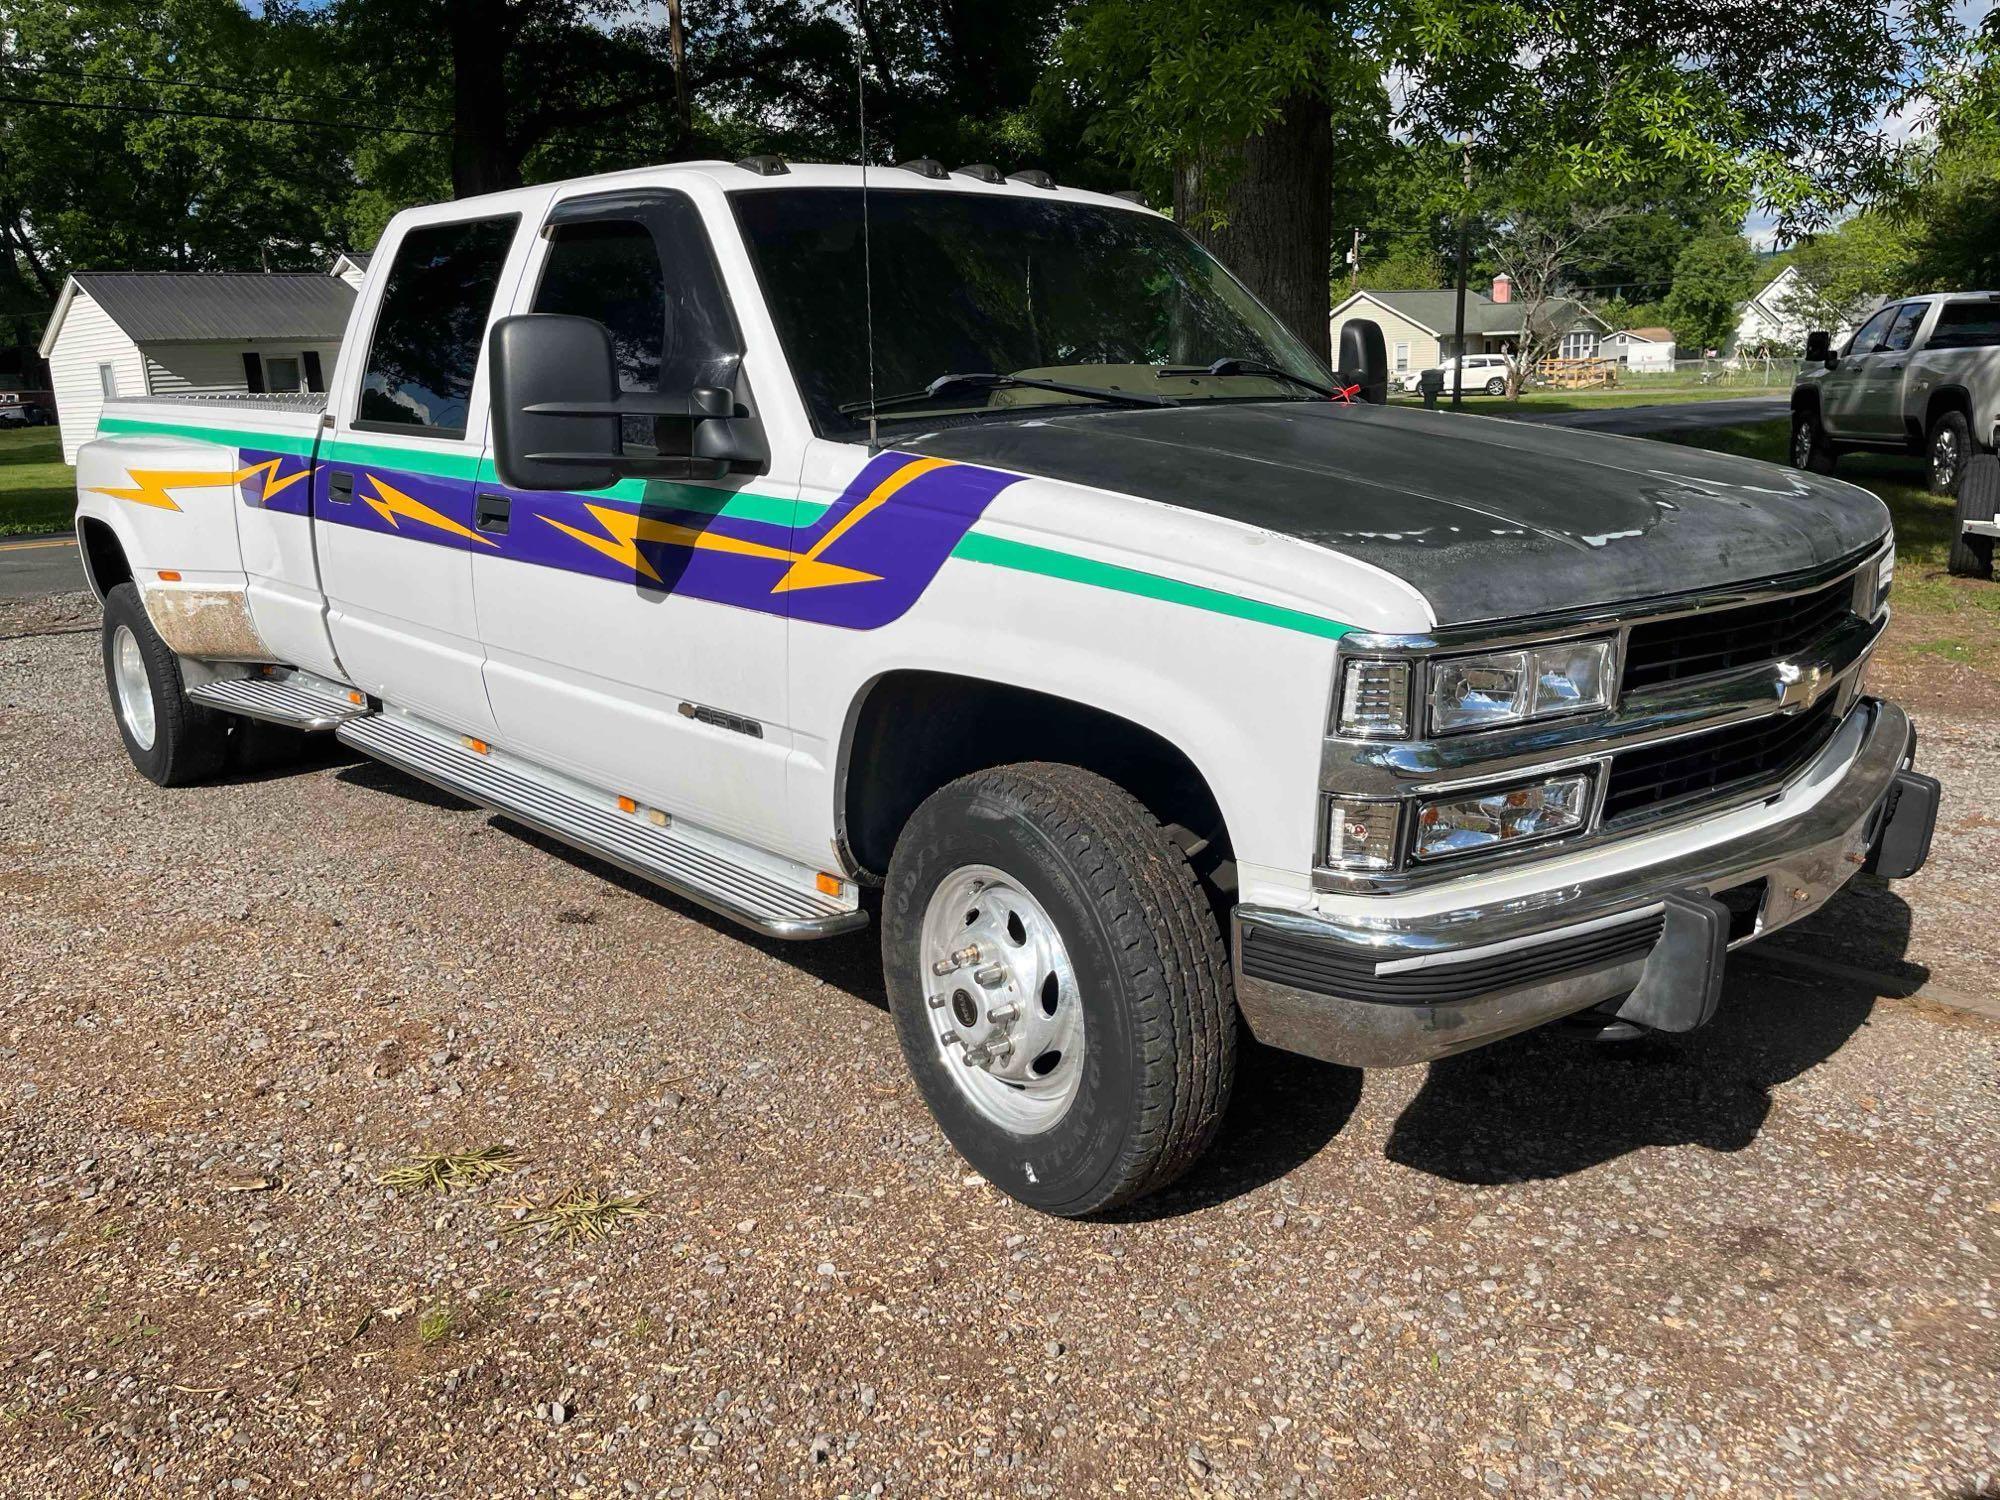 1995 Chevrolet C3500 Pickup Truck, VIN # 1GCHC33N5SF006413